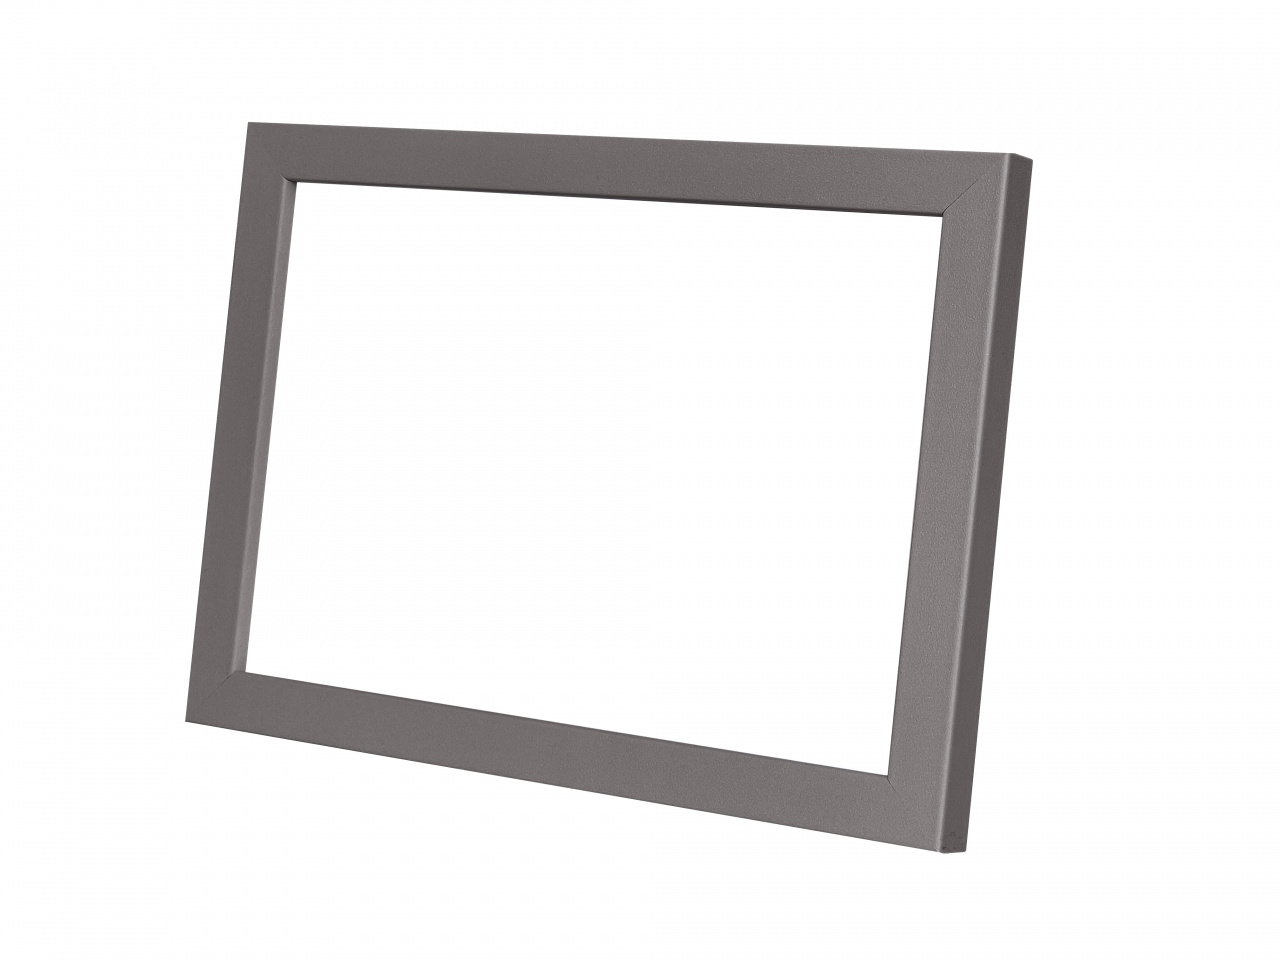 Cadru PVC pentru rama foto digitala 10.1 inch, culoare gri